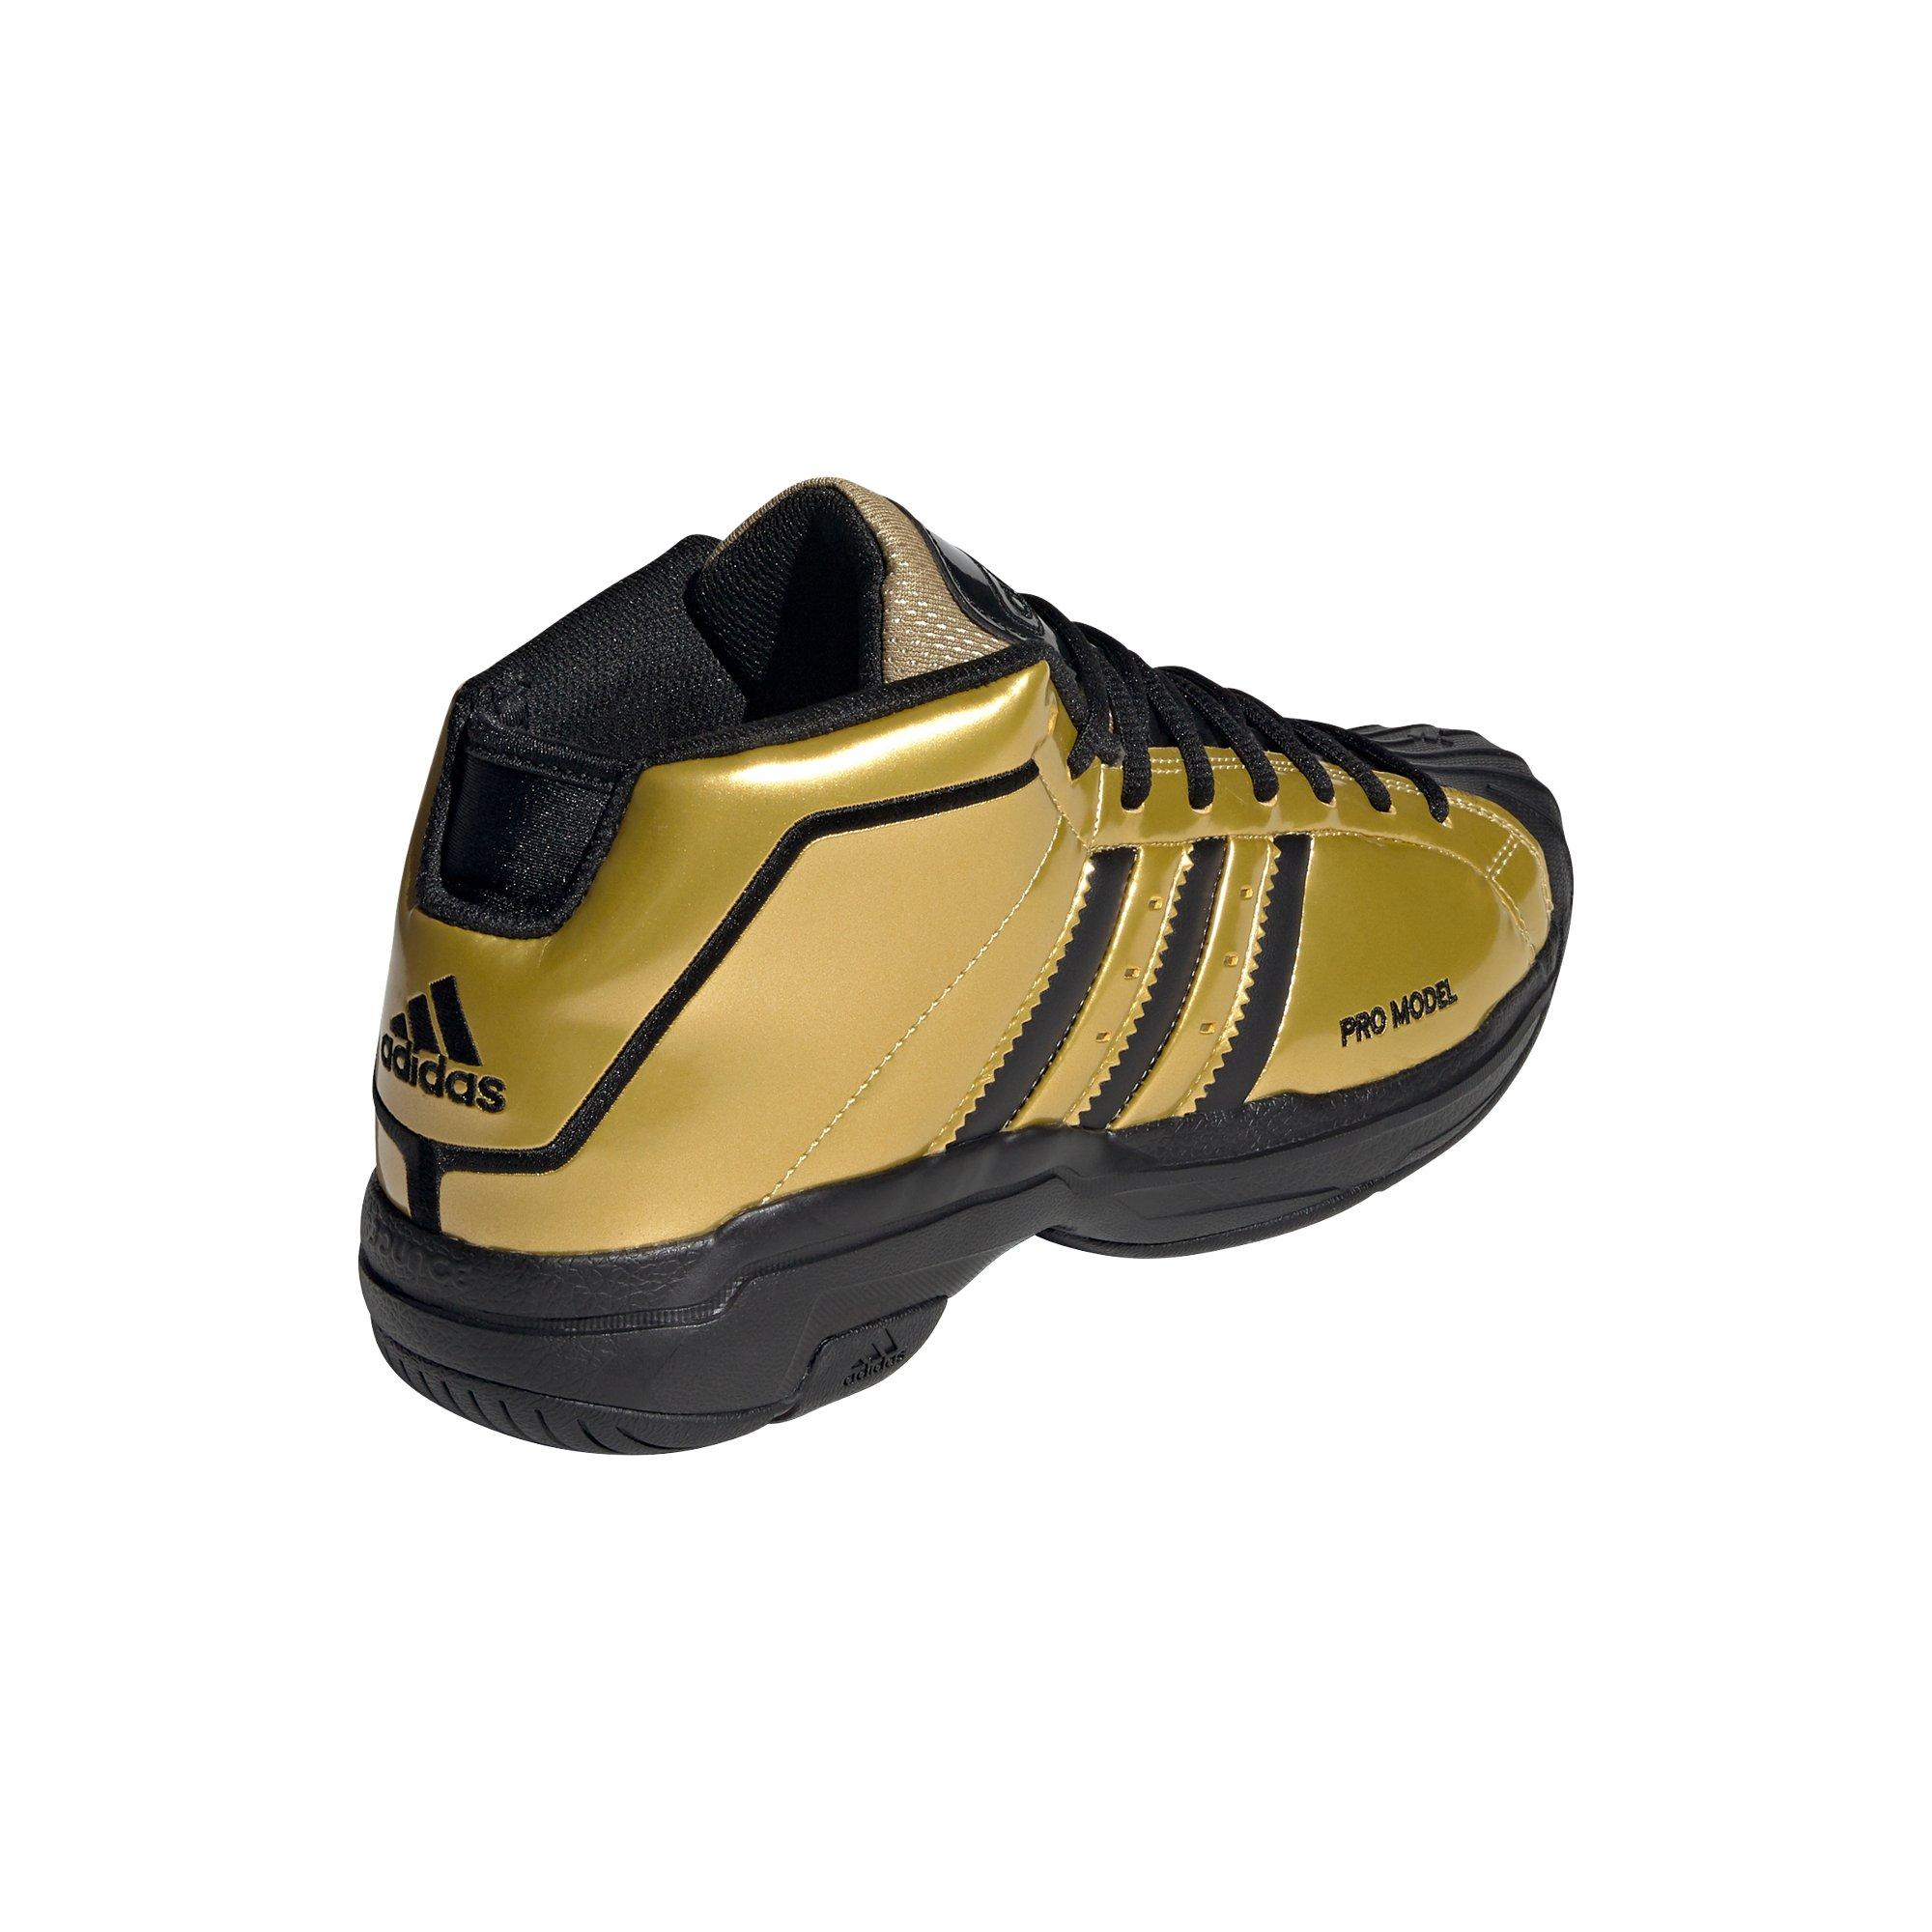 Superstar 2g Basketball Shoes | vlr.eng.br